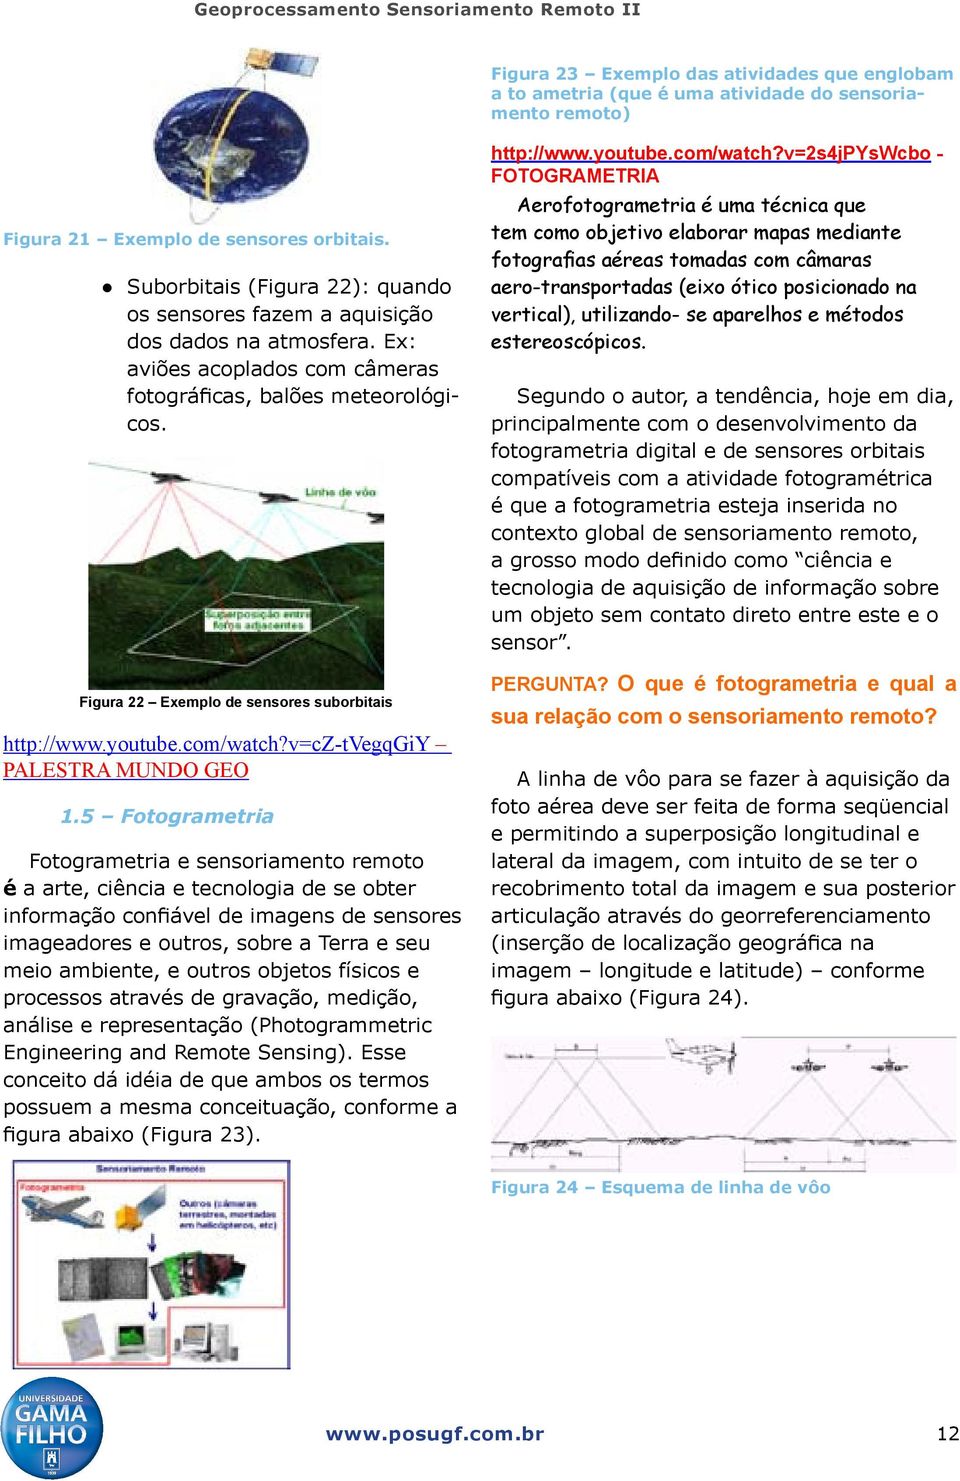 Figura 22 Exemplo de sensores suborbitais http://www.youtube.com/watch?v=cz-tvegqgiy PALESTRA MUNDO GEO 1.